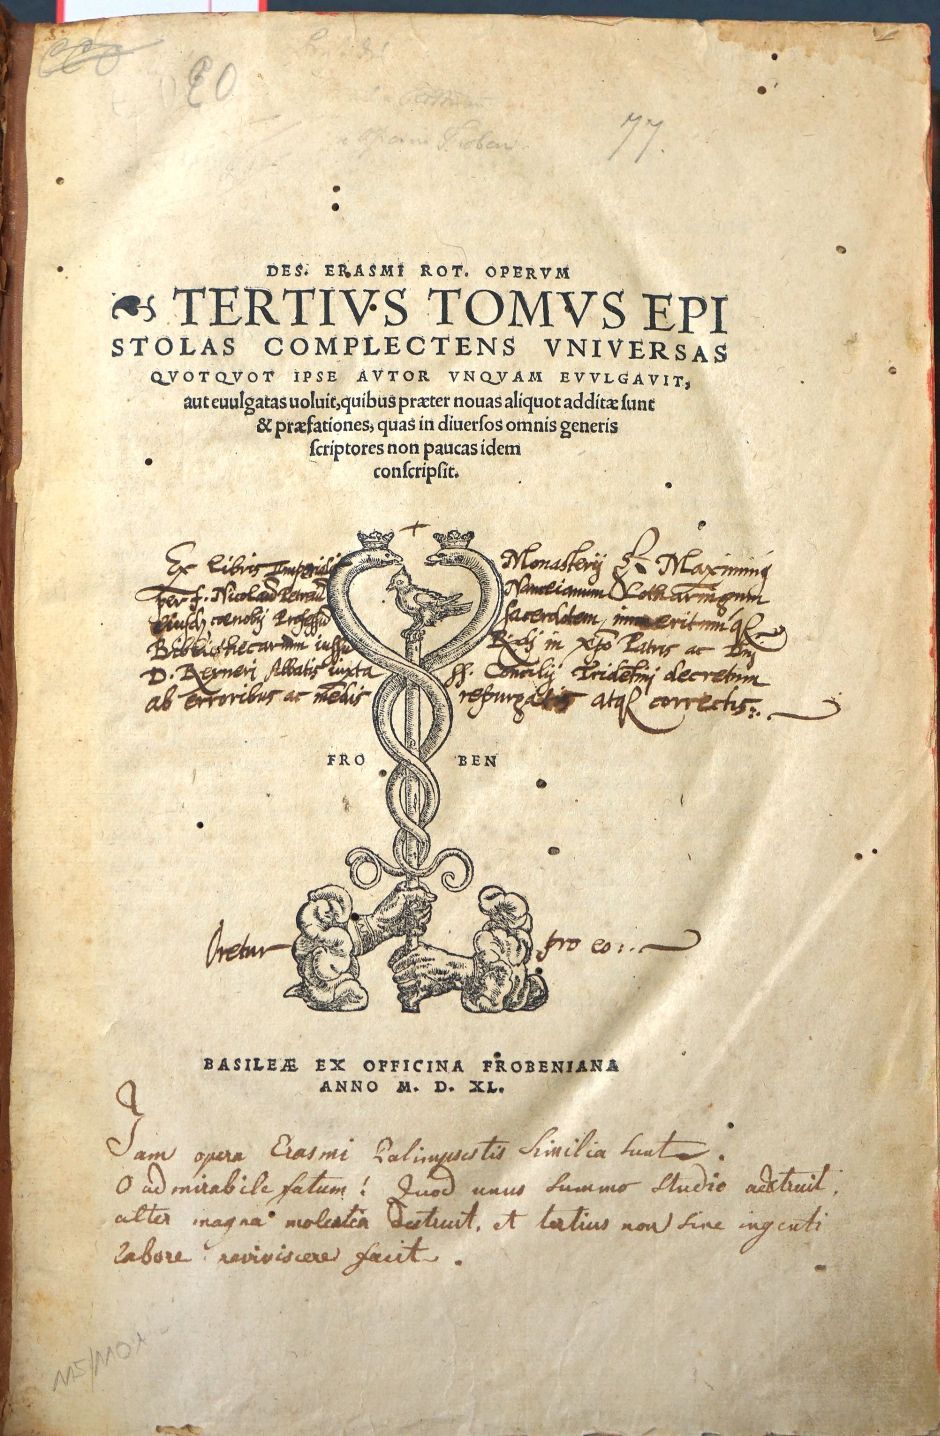 Lot 1101, Auction  115, Erasmus von Rotterdam, Desiderius, Operum tertius tomus epistolas complectens